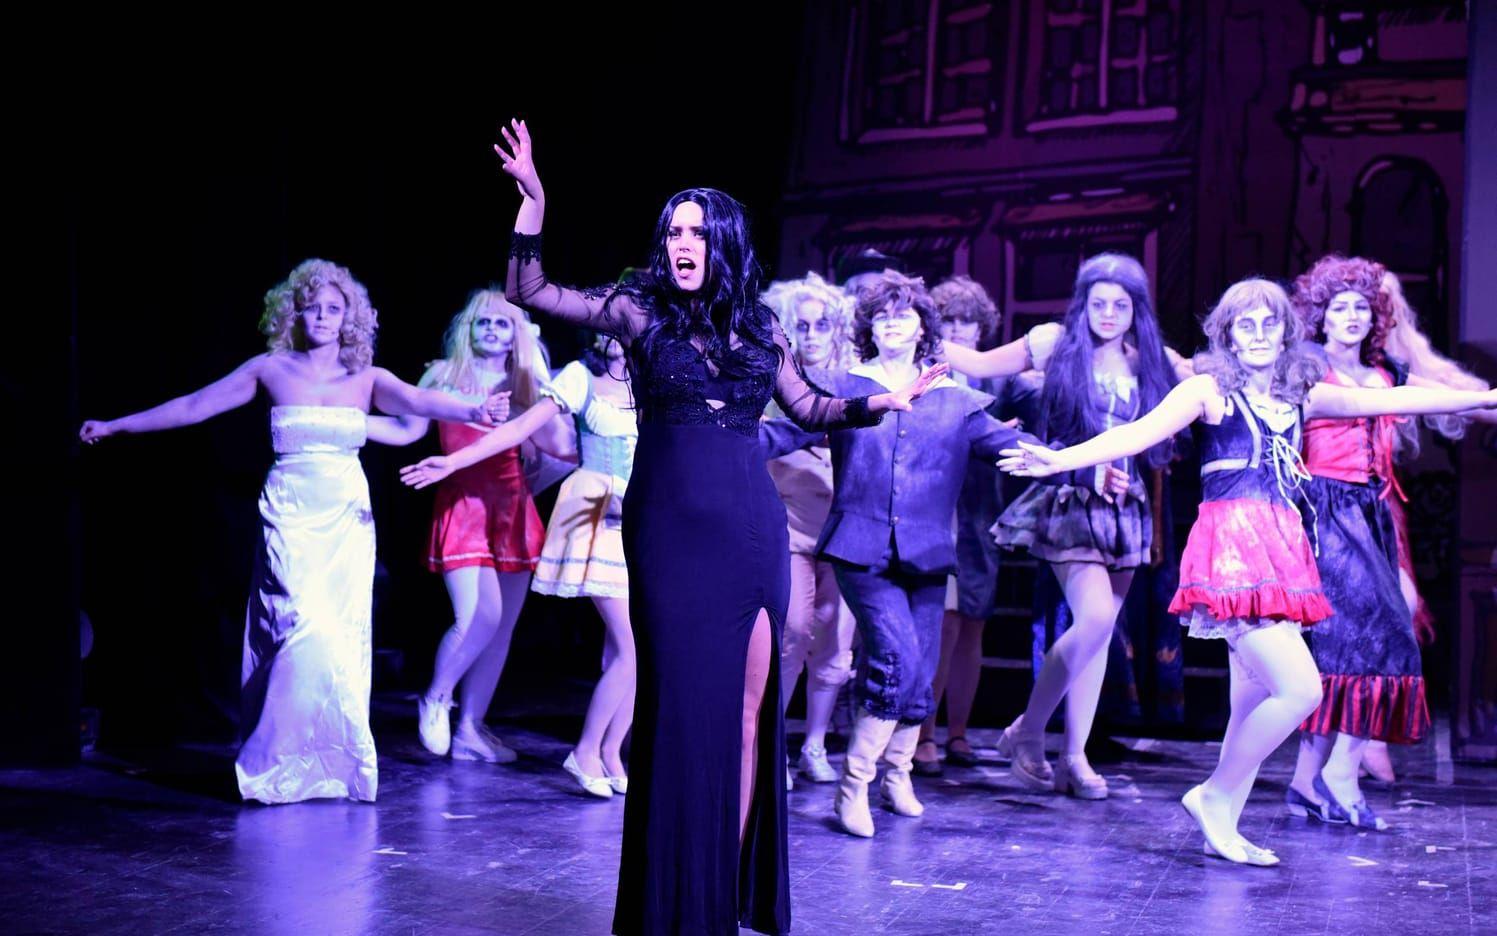 Alice Lindholm spelar Morticia Addams och repeterar låten "Secrets" med ensemblen som spöken. Den 30-årsjubilerande PS-musikalen har premiär den 19 januari på Varbergs teater. Bild: Martin Erlandsson